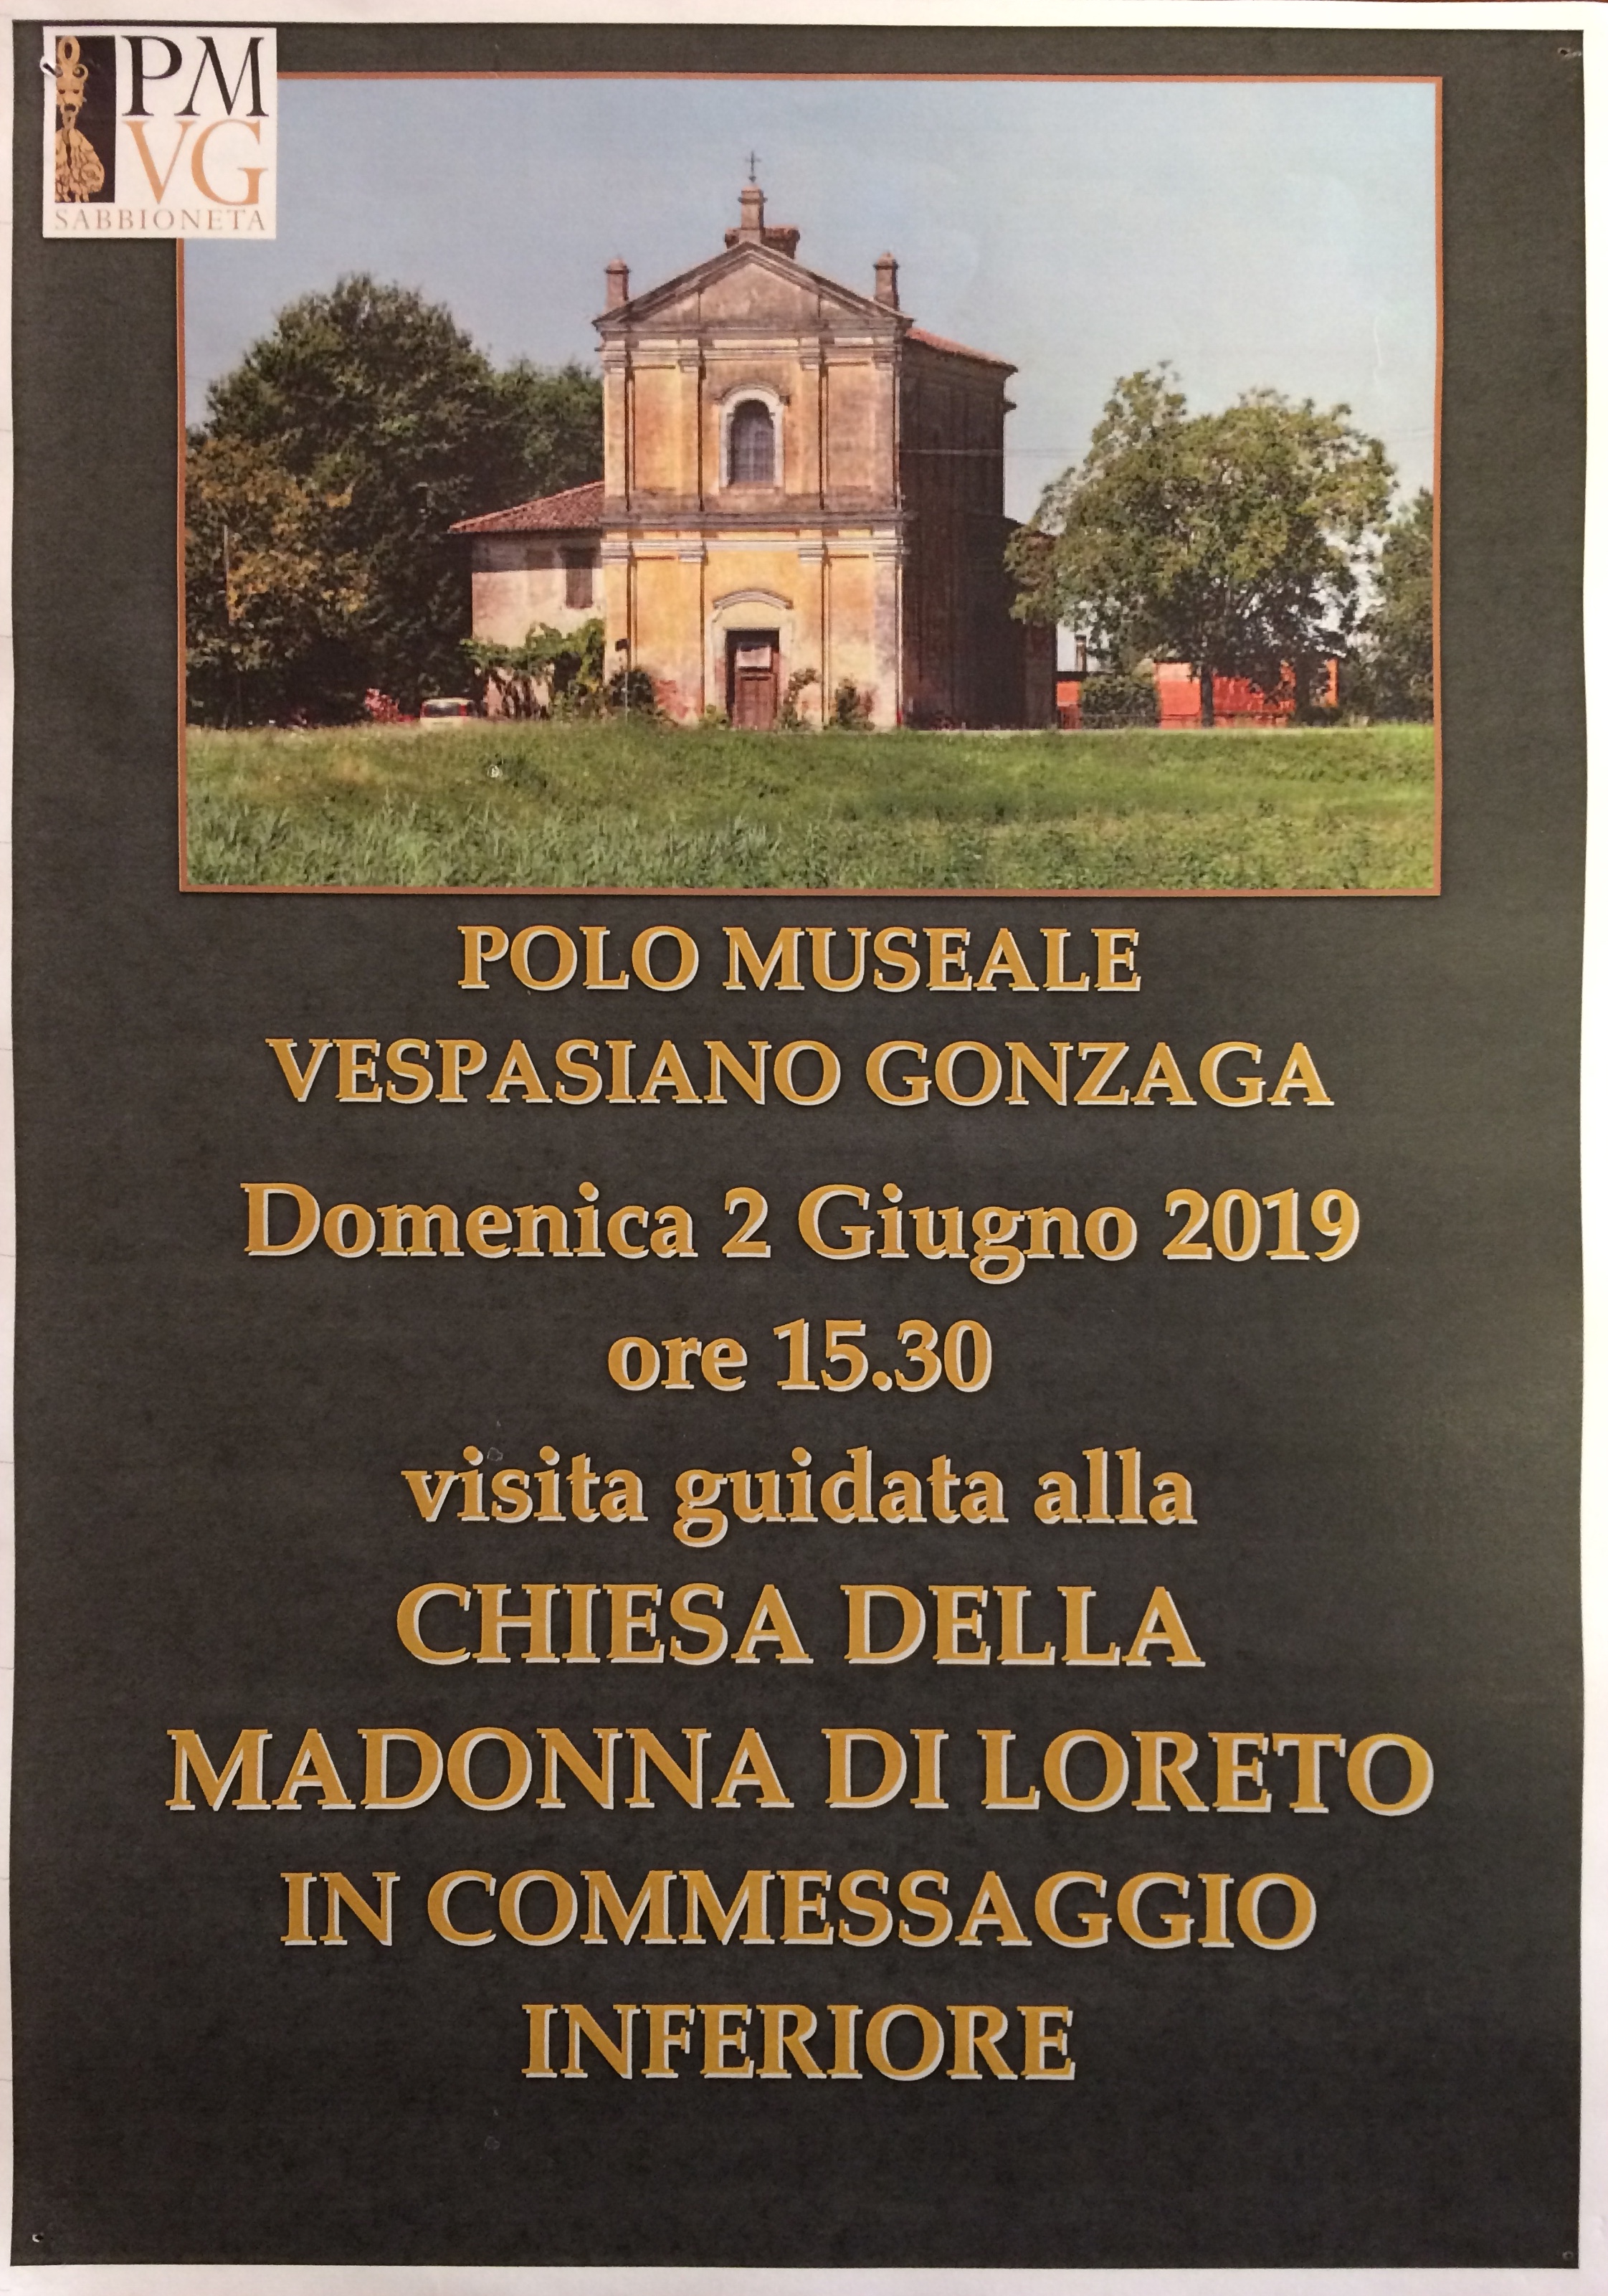 2 Giugno 2019 Chiesa della Madonna di Loreto